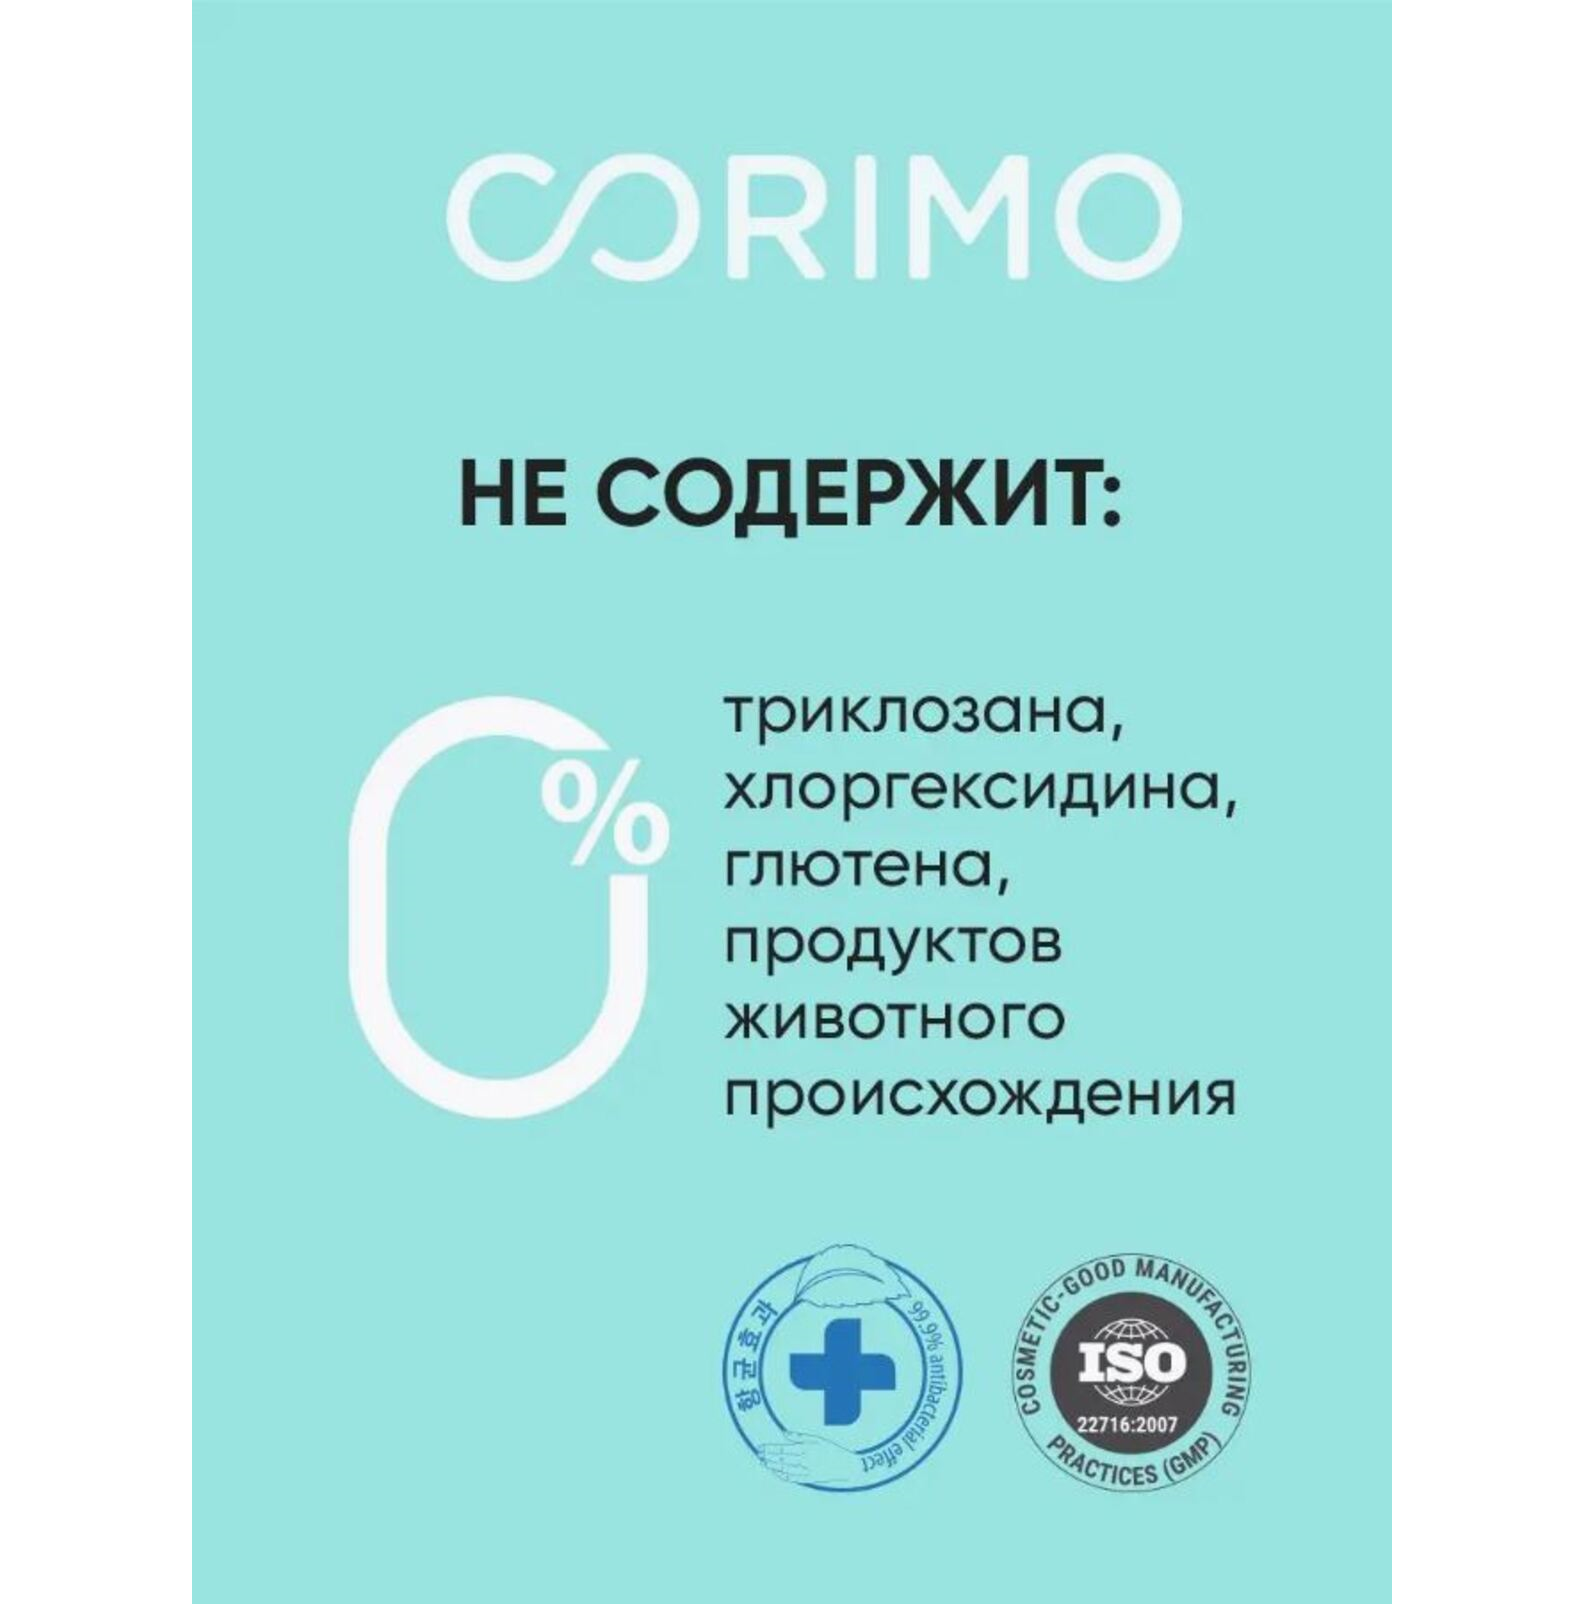 Зубная паста CORIMO профилактическая против пародонтоза и парадонтита 75 г - фото 6